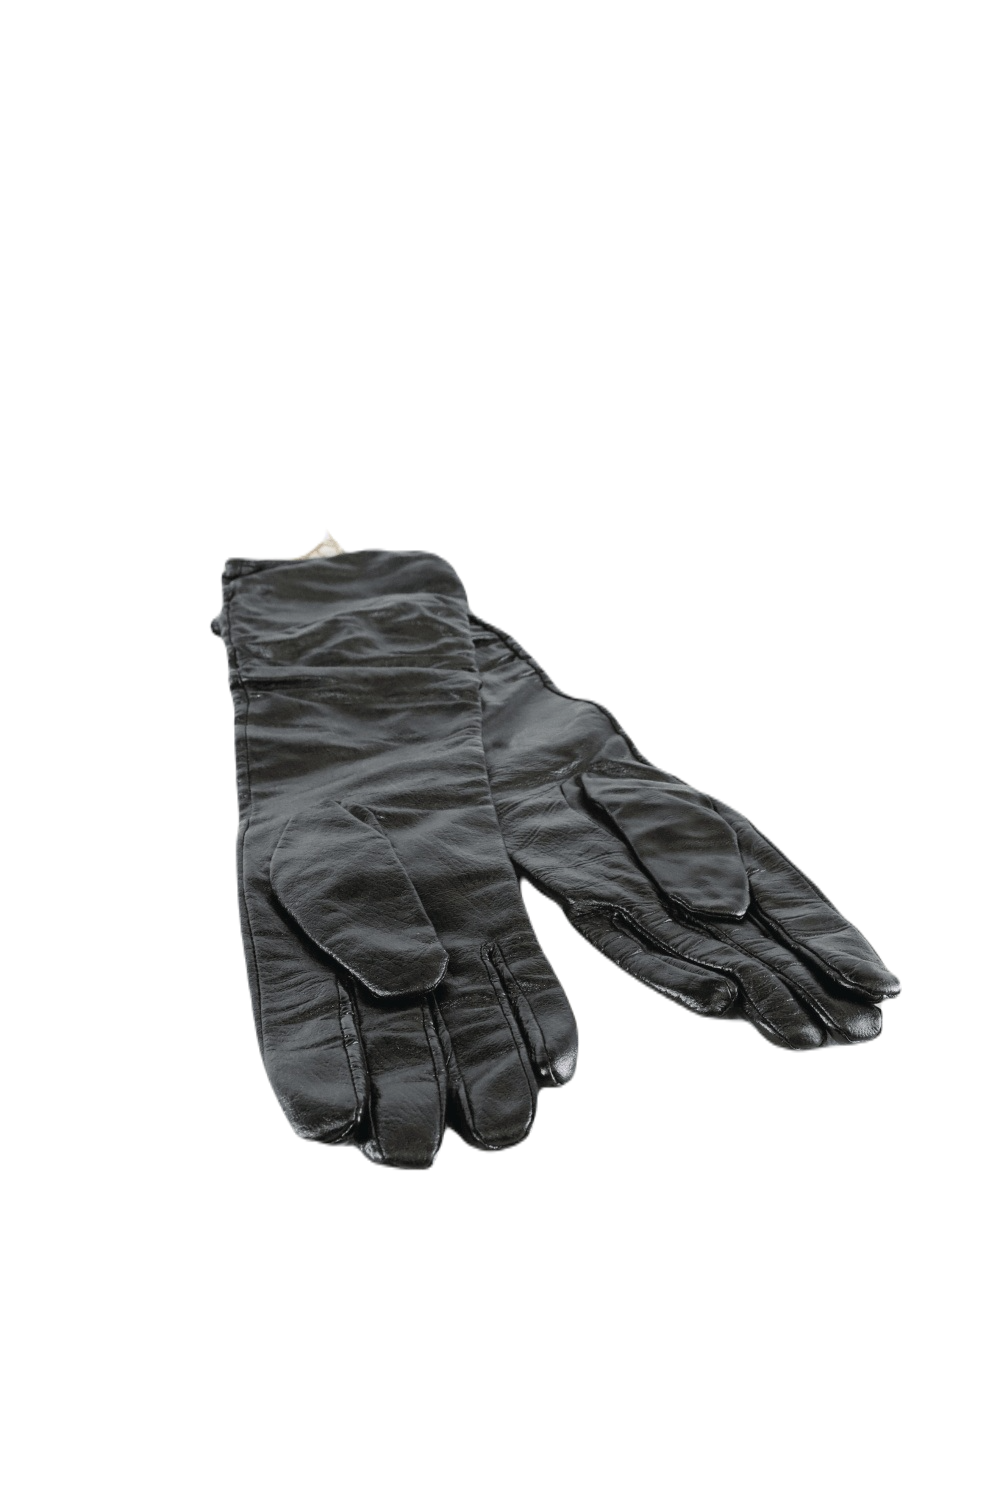 Boutique Black Faux Leather Gloves